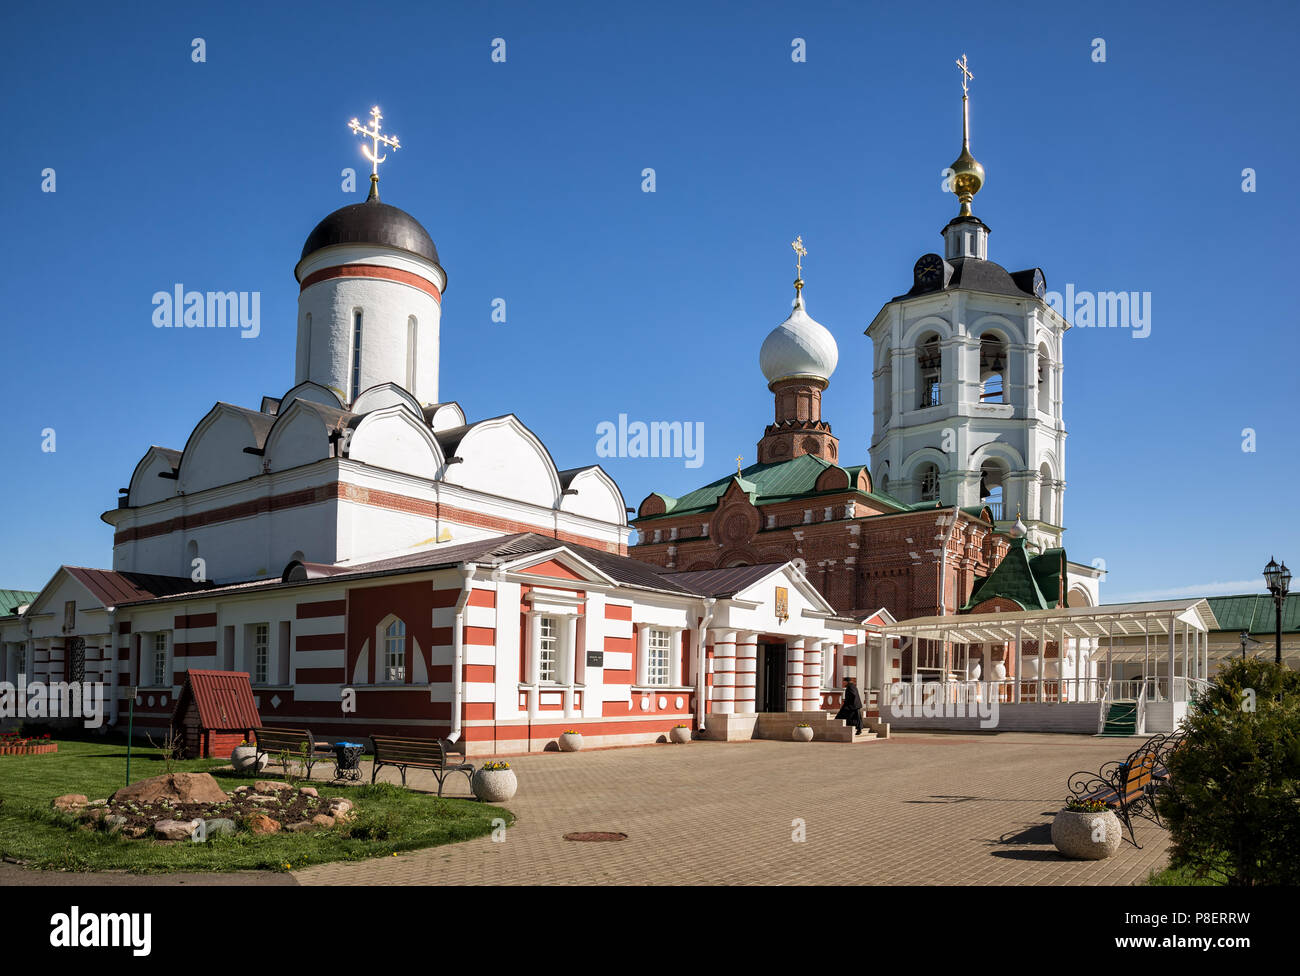 Architectural ensemble of the Nikolo-Peshnoshsky Monastery in Lugovoi. Monk enters temple. Moscow Region, Russia Stock Photo